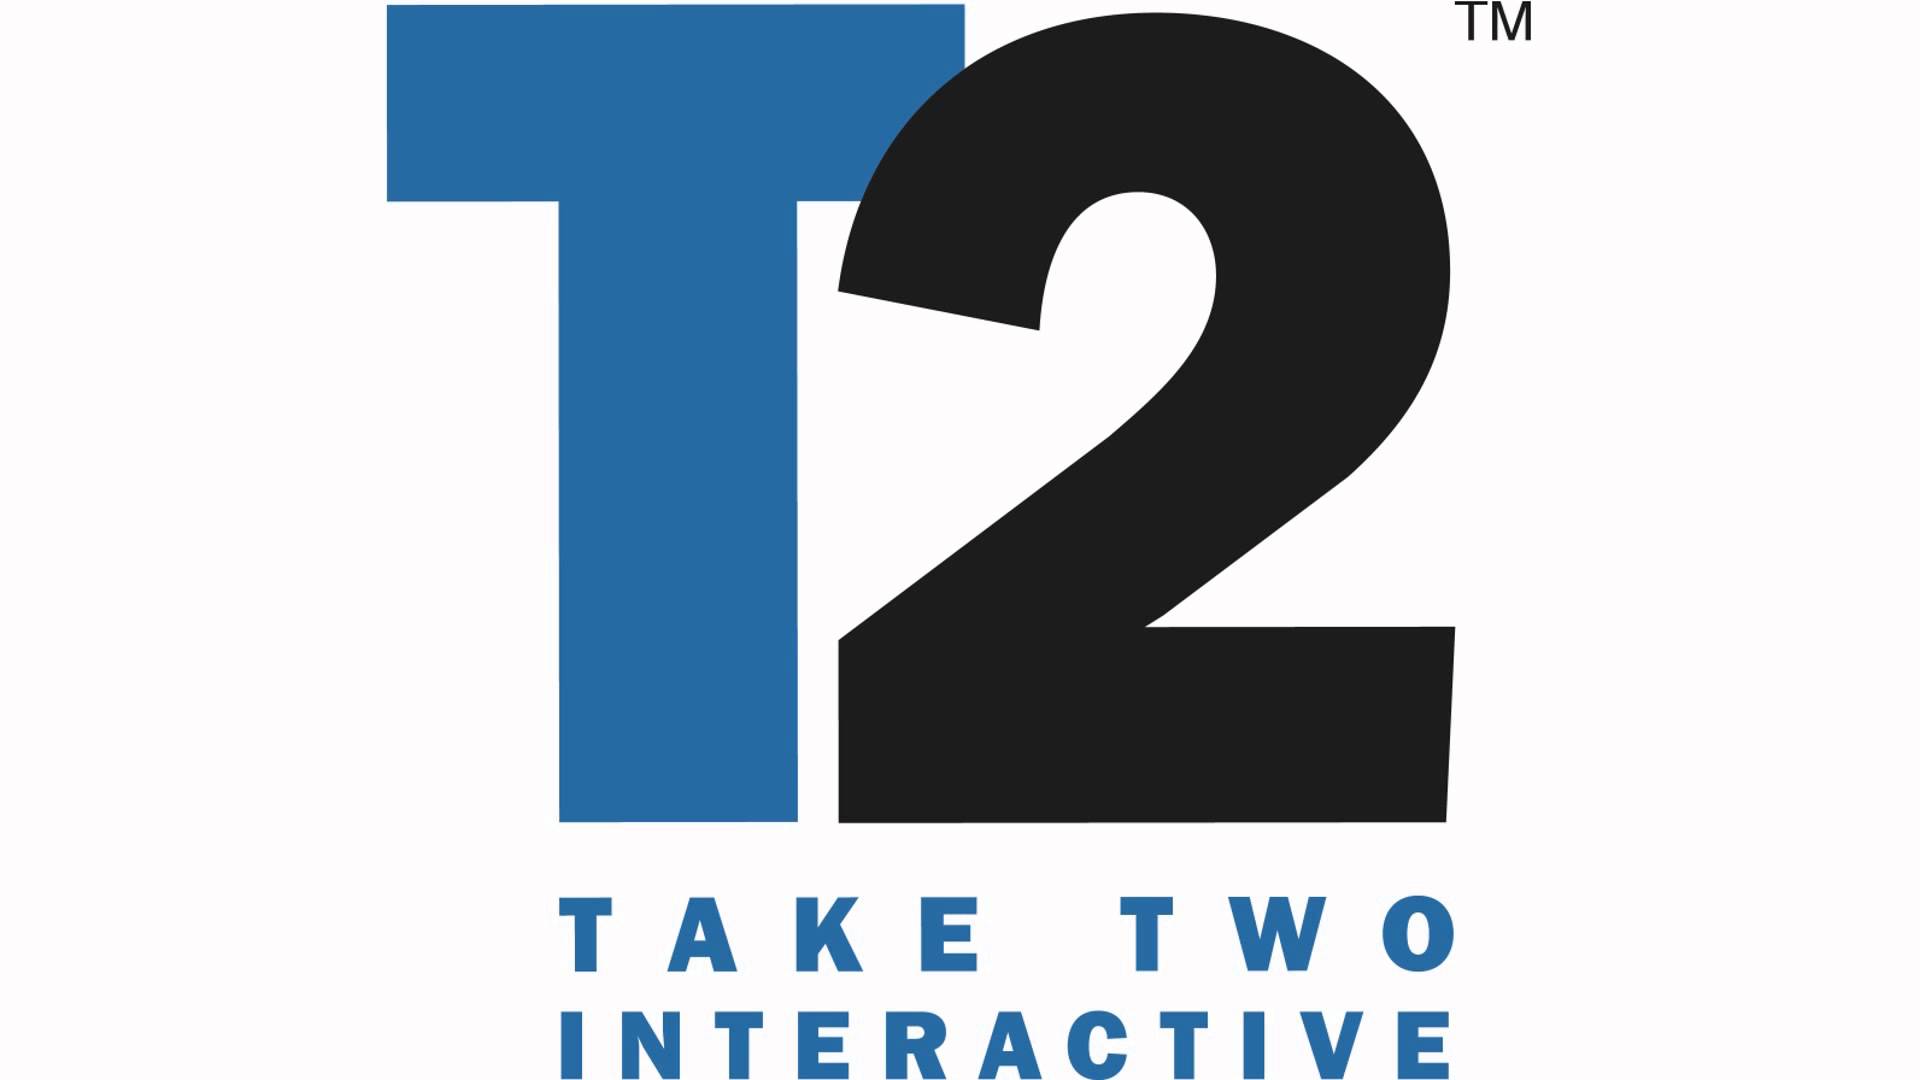 شرکت Take-Two به دنبال خلق تصاویر واقع گرایانه در نسل بعد است